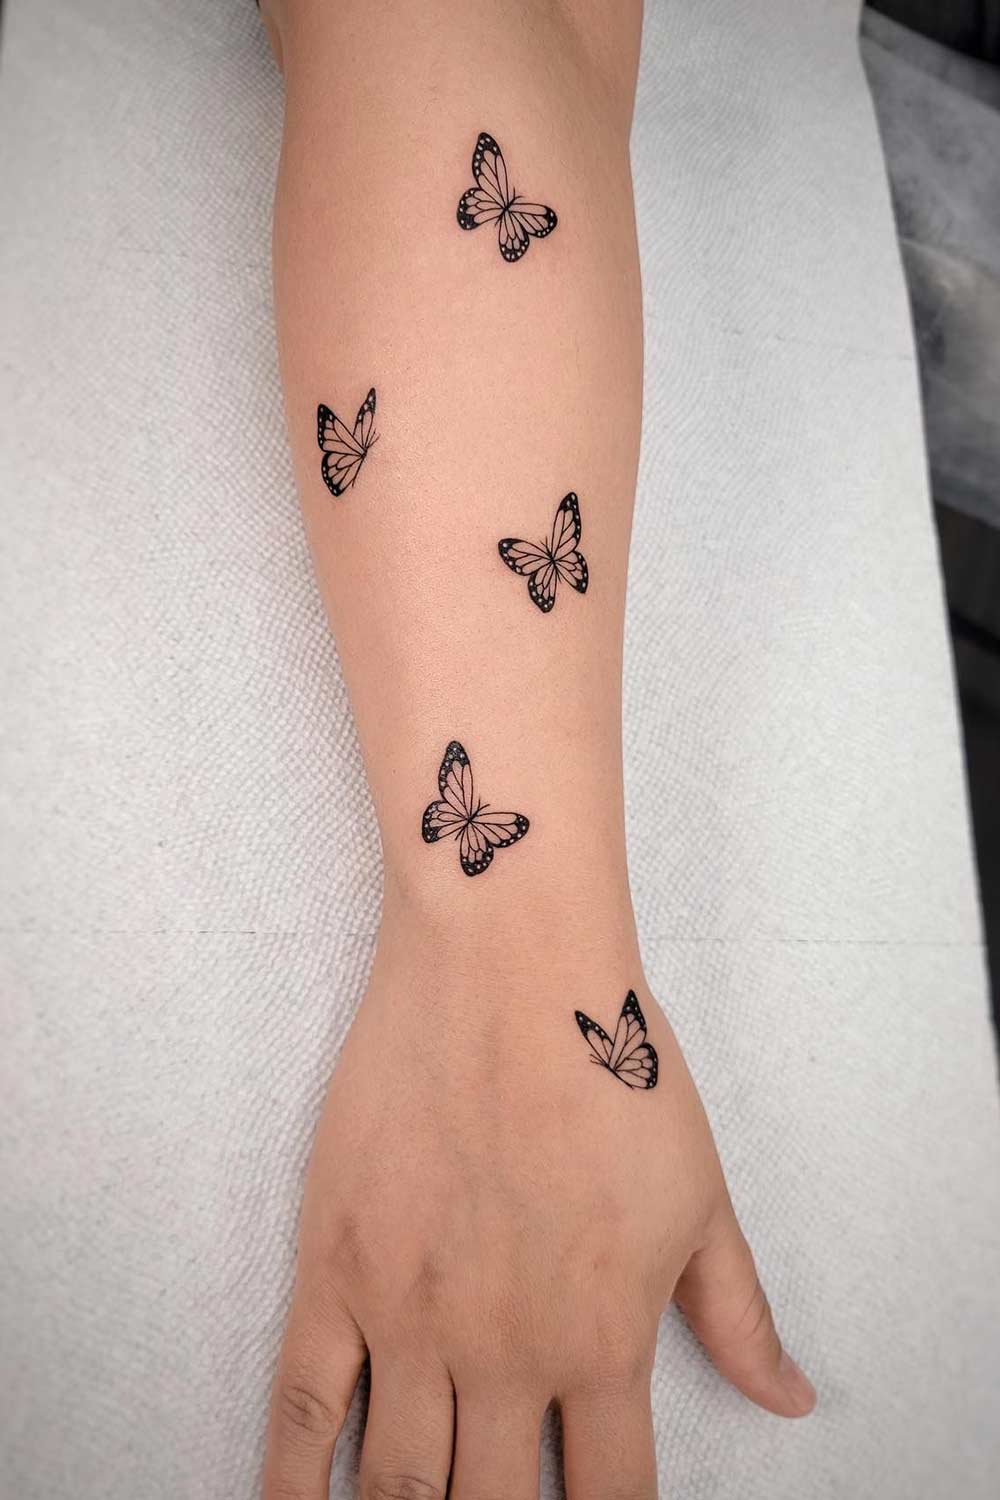 tatuagem-de-borboletas-no-antebraco 